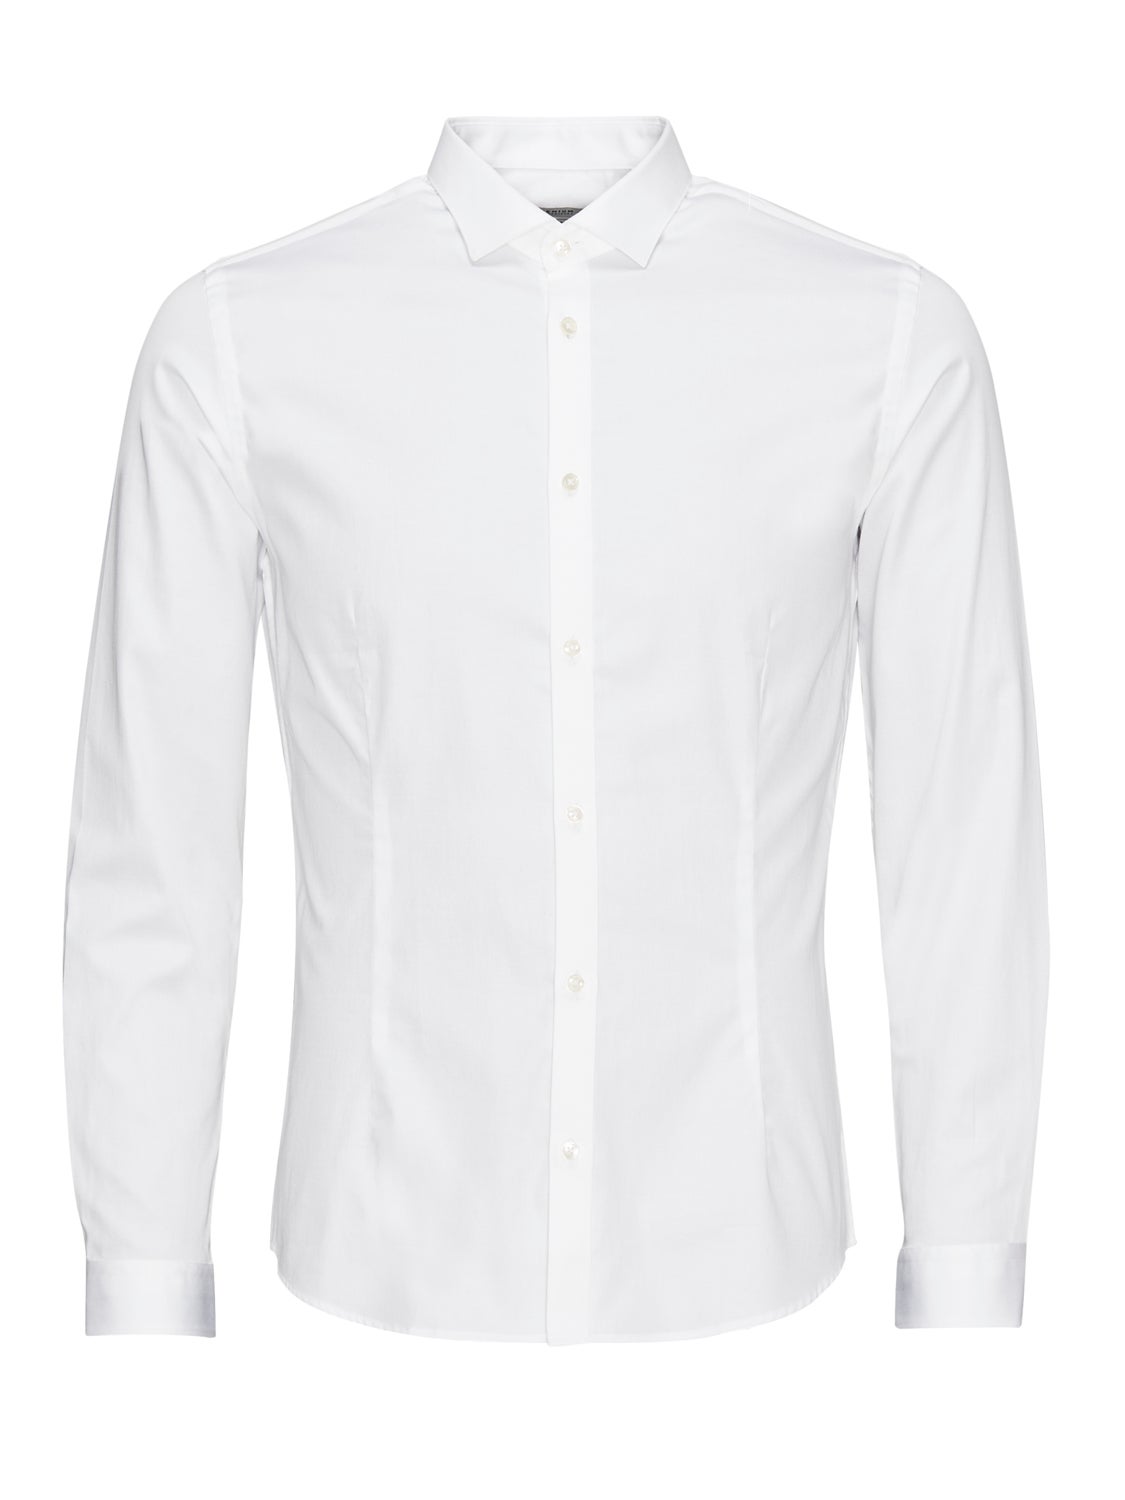 Camisa Hombre Blanco Con Cuadrado Jack & Jones - 12212591 - 12212591.25